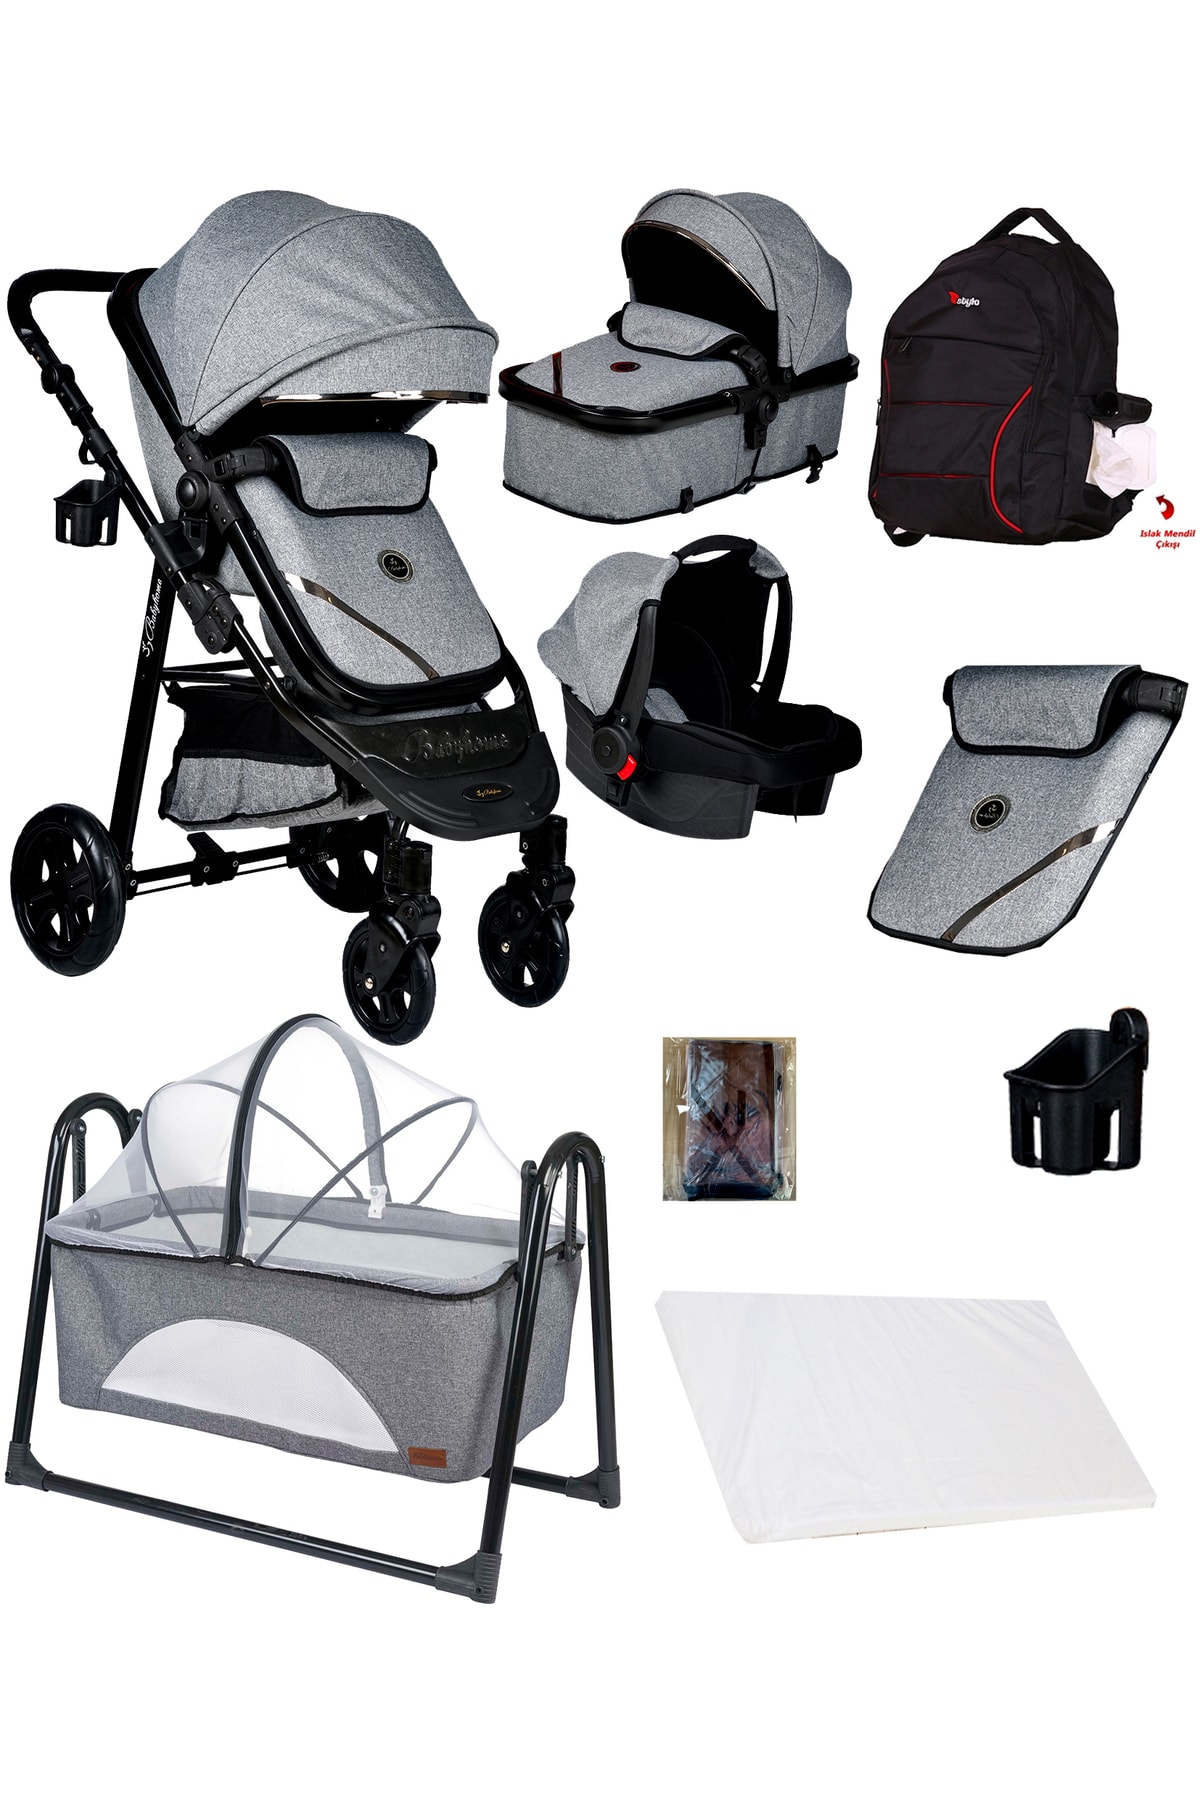 Baby Home Yeni Ekonomi Paket 8 In 1 940 Travel Sistem Bebek Arabası 340 Anne Yanı Bebek Sepeti Beşik